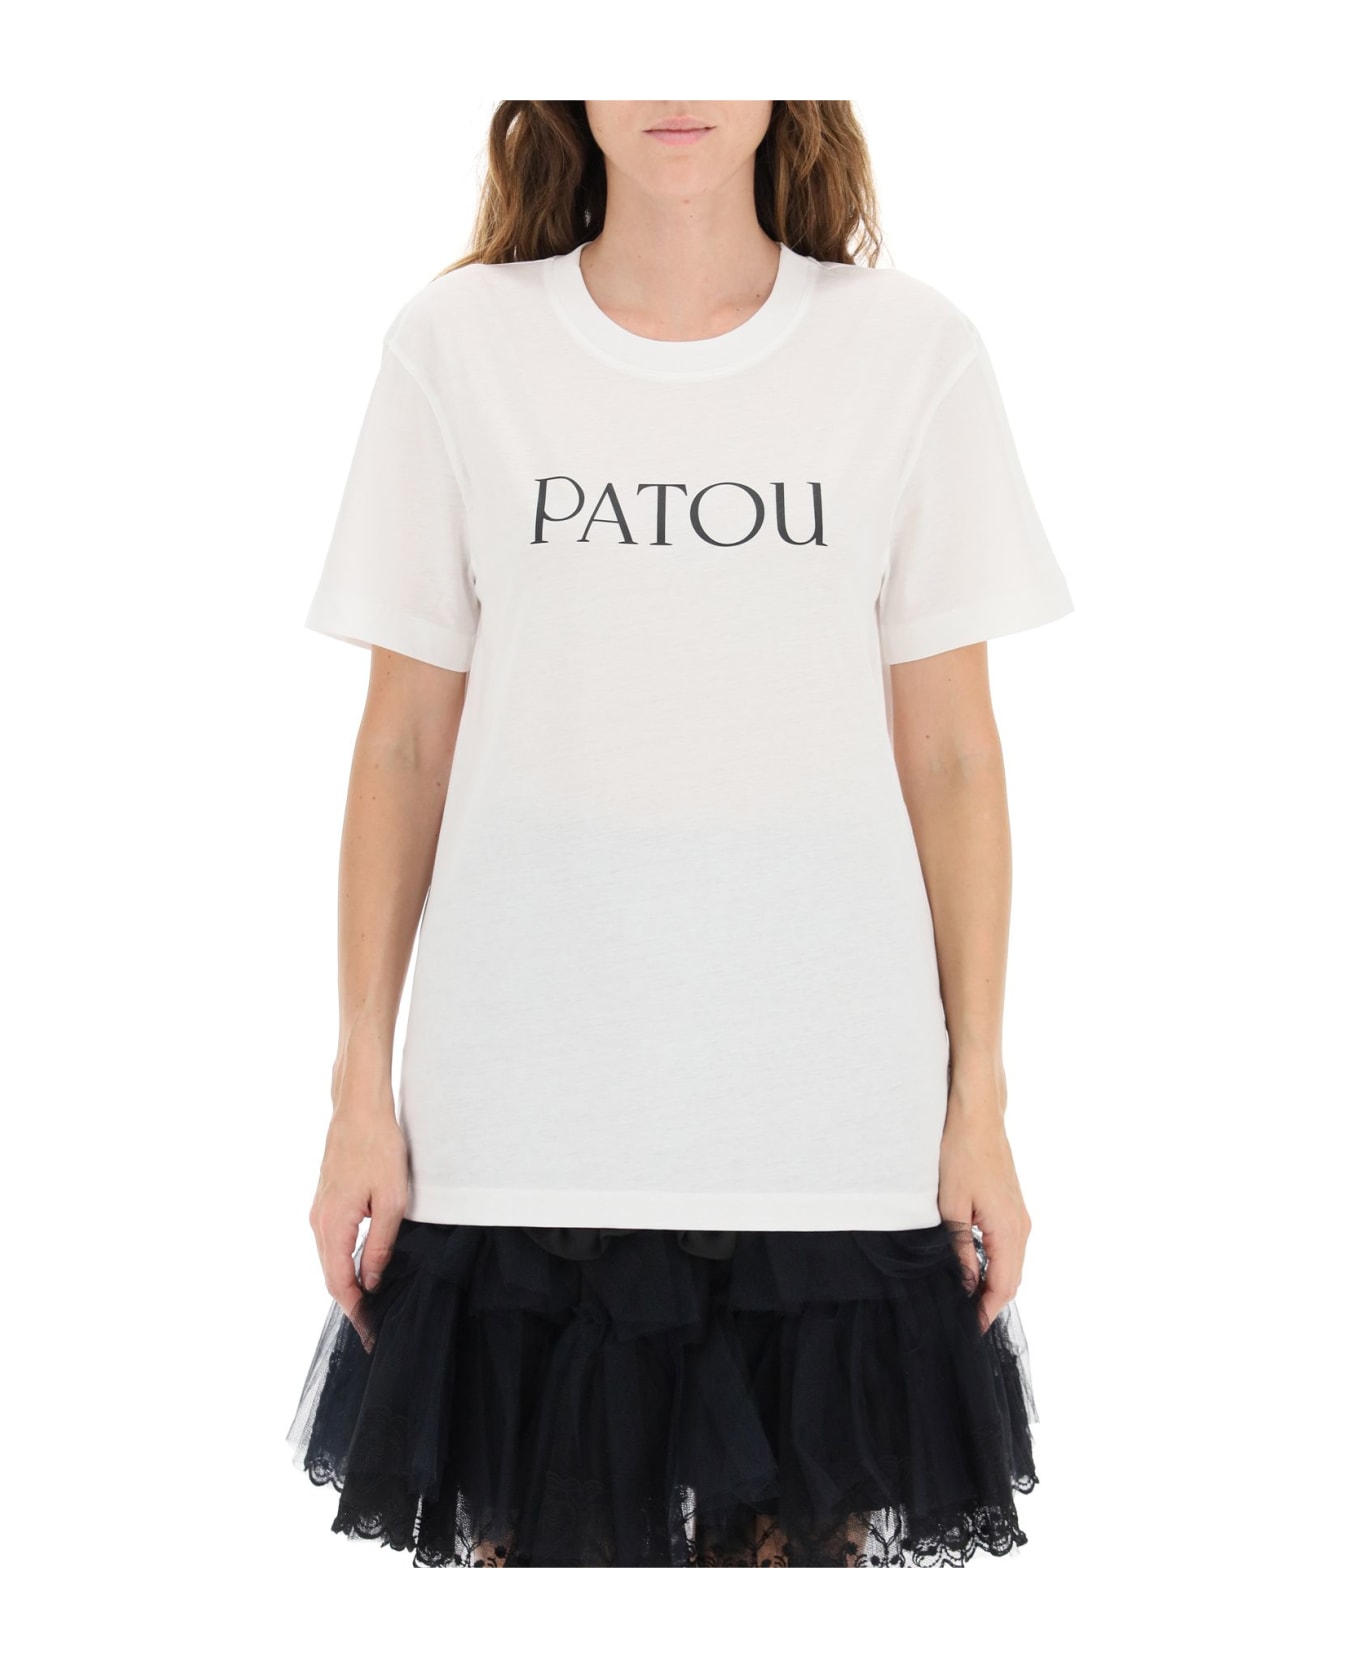 Patou Logo Print T-shirt - W White Tシャツ